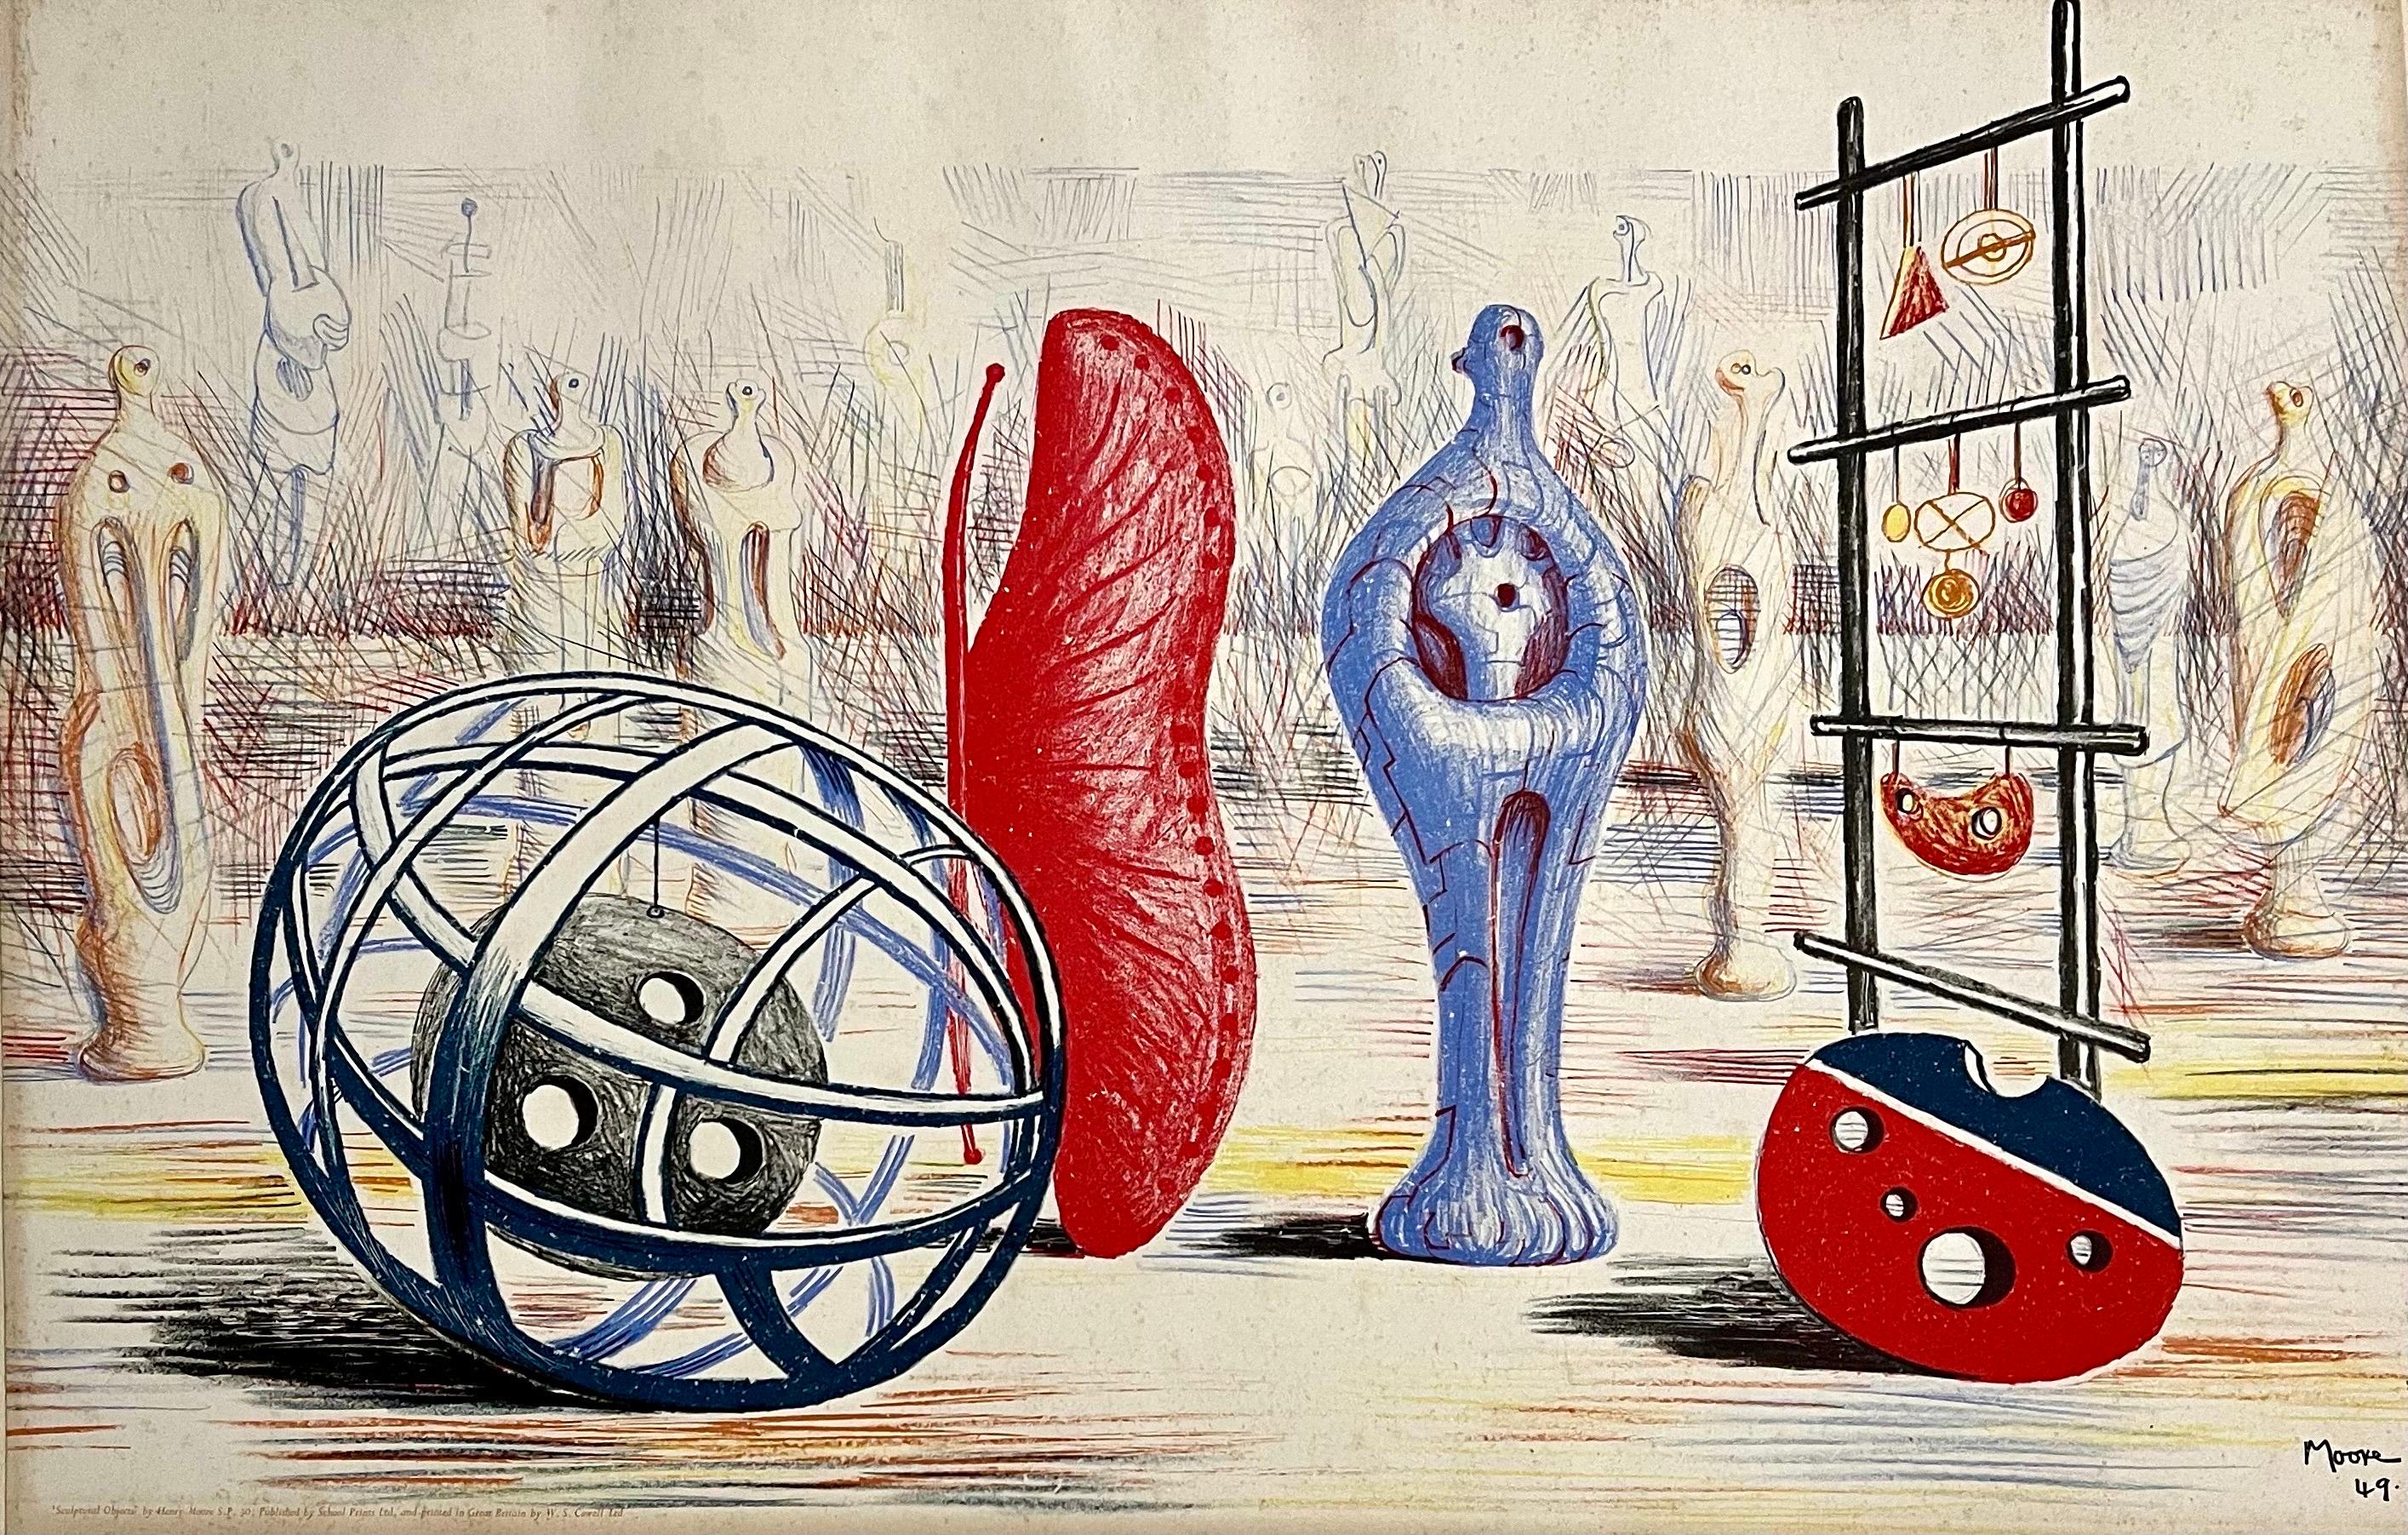 Henry Moore (britannique, 1898 - 1986) 
"Objets sculpturaux" - 1949 
Lithographie, signée dans la planche. 
Monté sur le support de la feuille d'appui
Taille de l'image : 19.5 x 30 in. 
Taille de la feuille : 22 x 32.5 in. 
Imprimé par W.S. Cowell